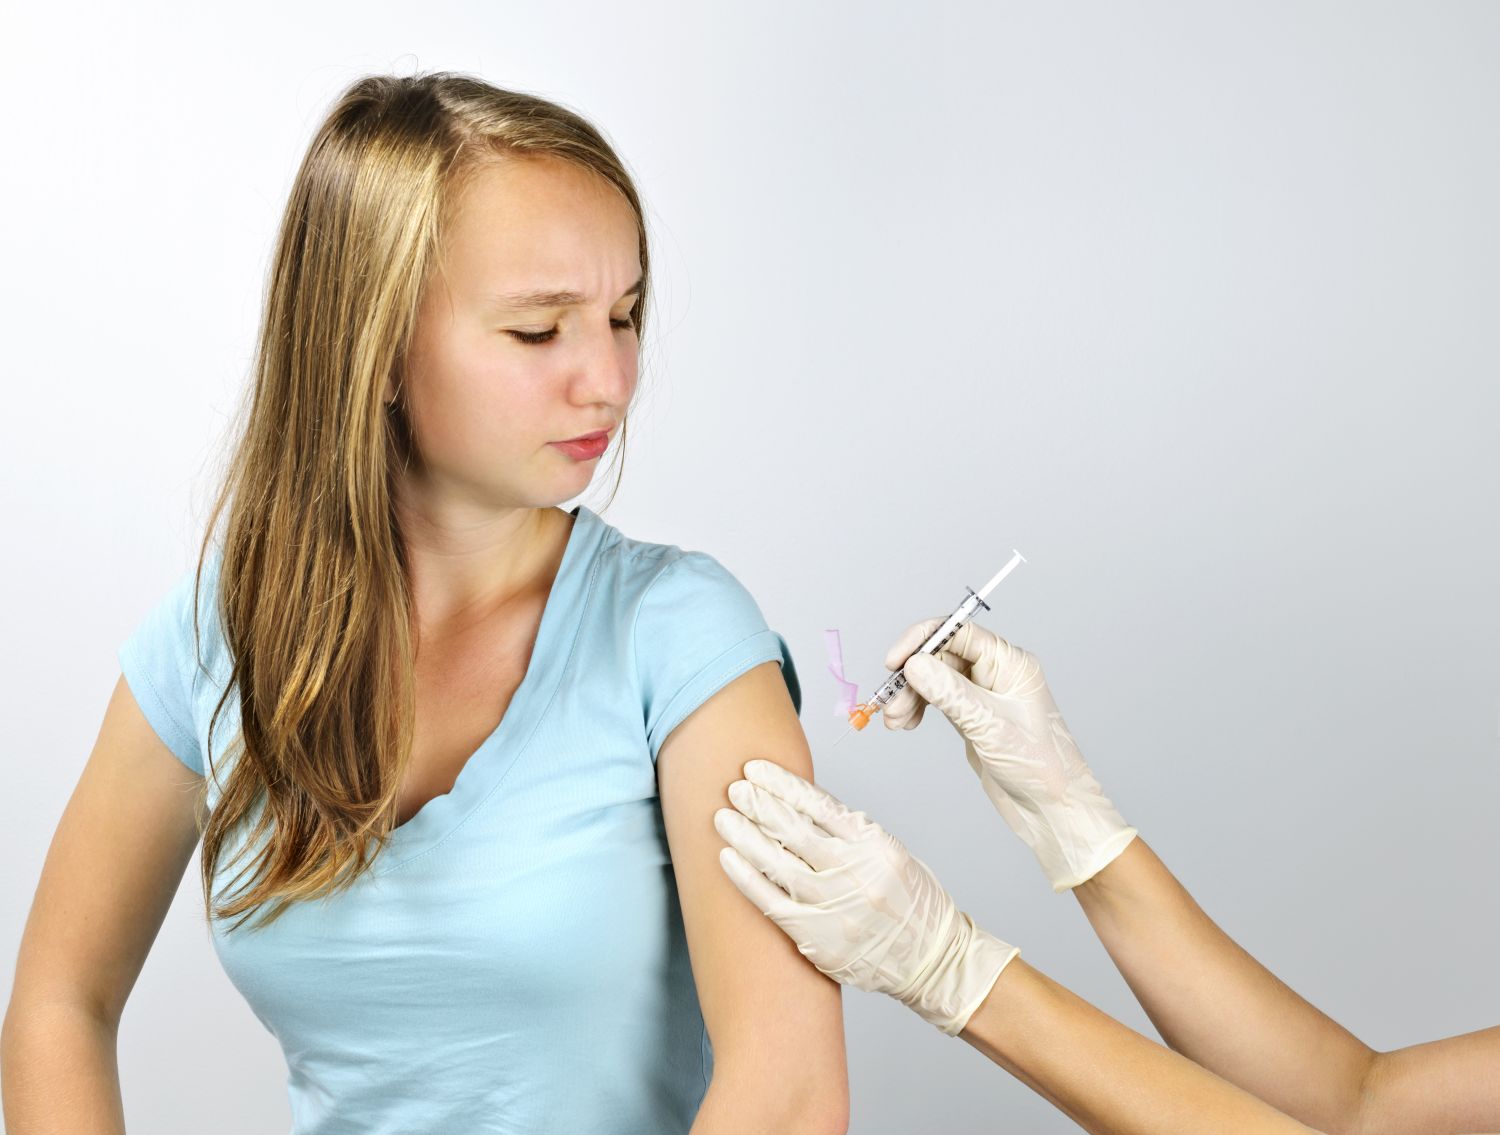  Ein Mädchen wird geimpft. Thema: HPV-Impfung